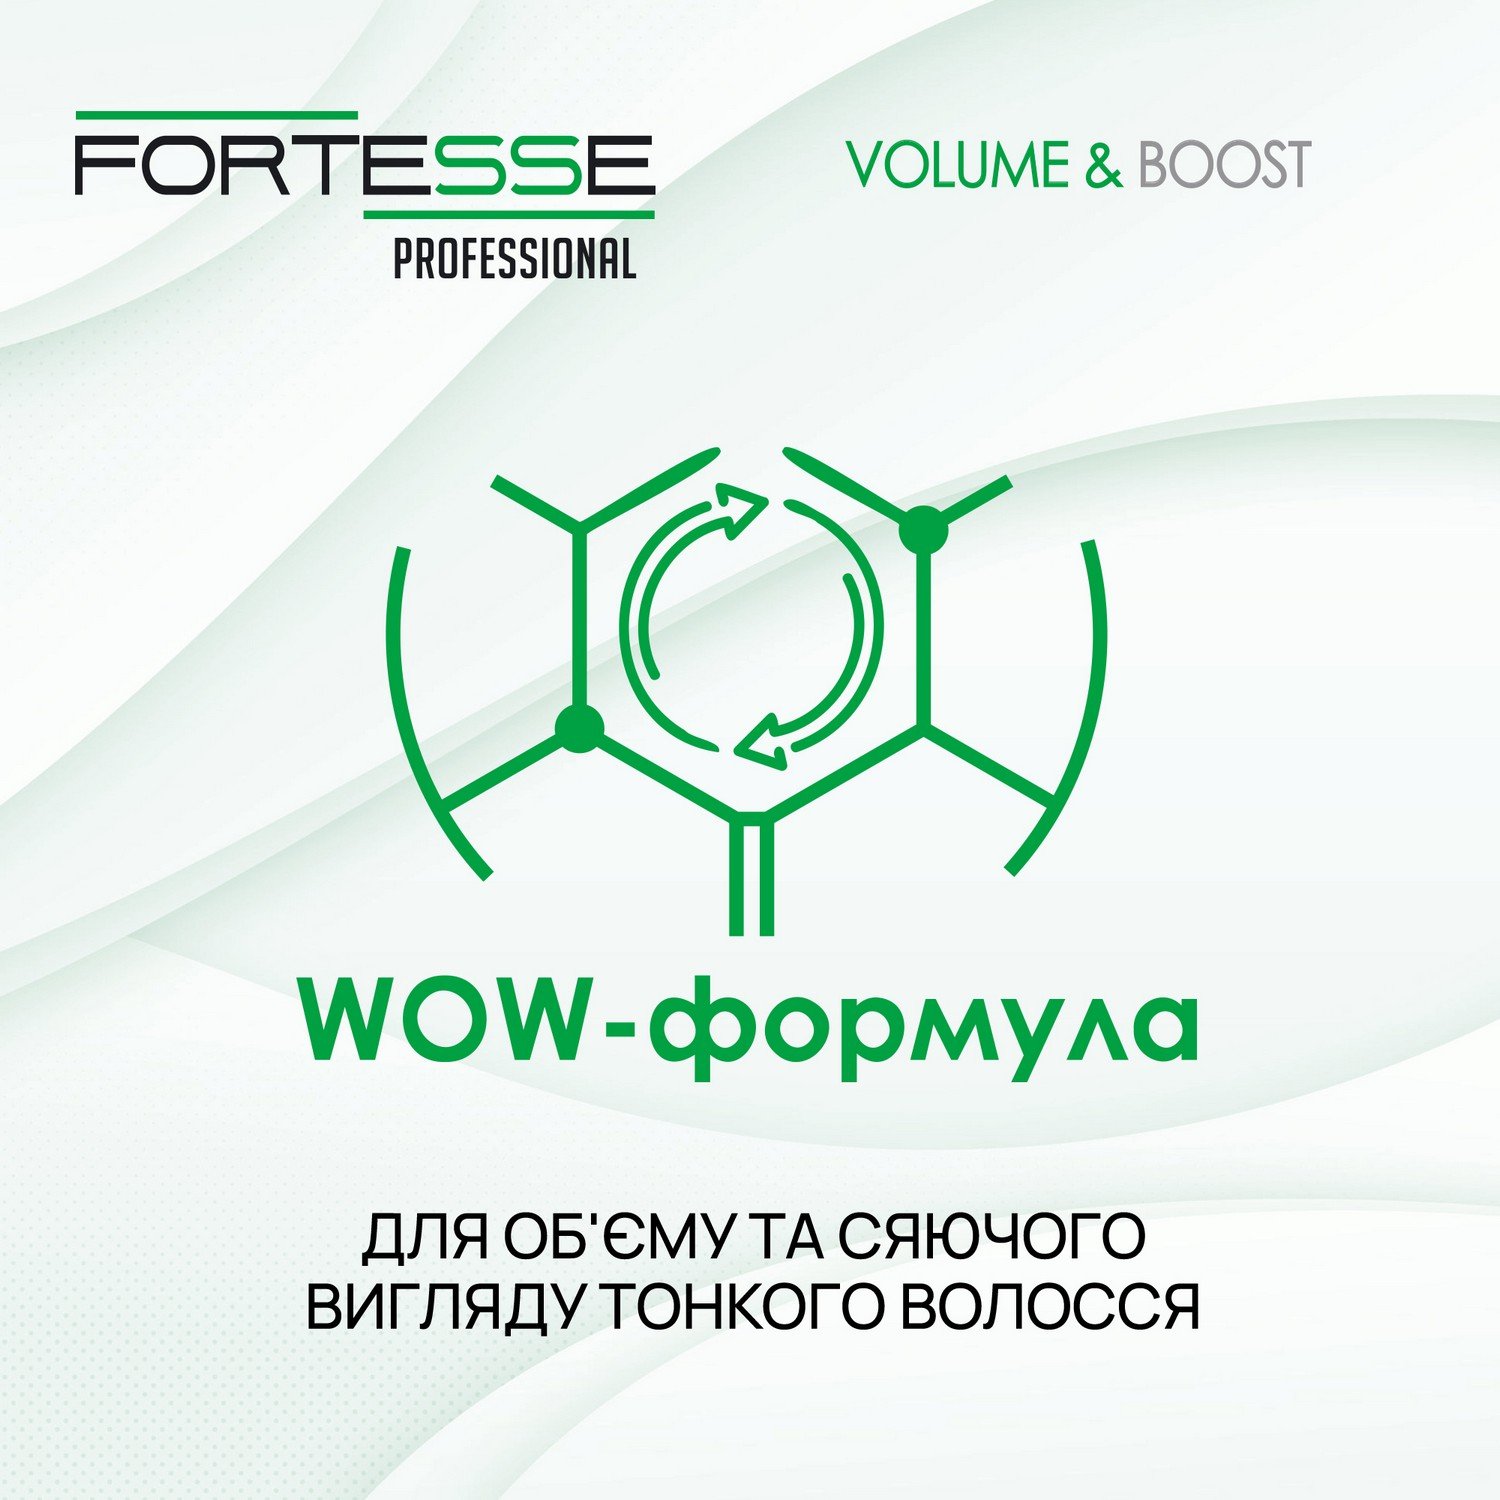 Шампунь Fortesse Professional Volume & Boost Об'єм, для тонкого волосся, з дозатором, 1000 мл - фото 6